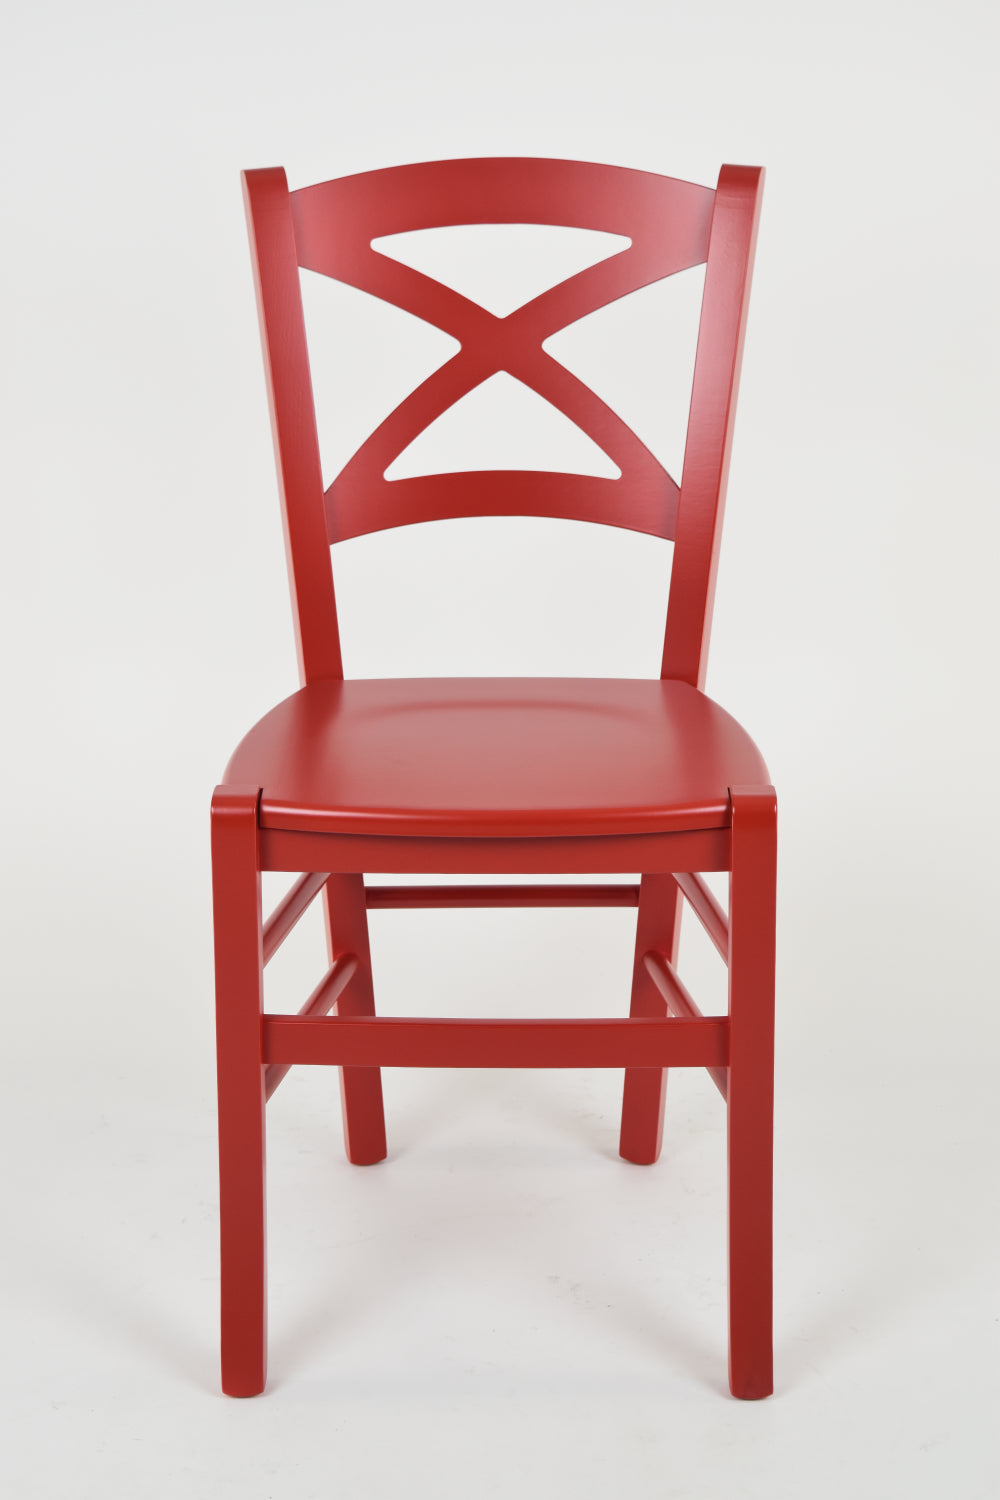 Tommychairs - Set 2 sillas de Cocina y Comedor Cross, Estructura en Madera de Haya lacada Color Rojo y Asiento en Madera